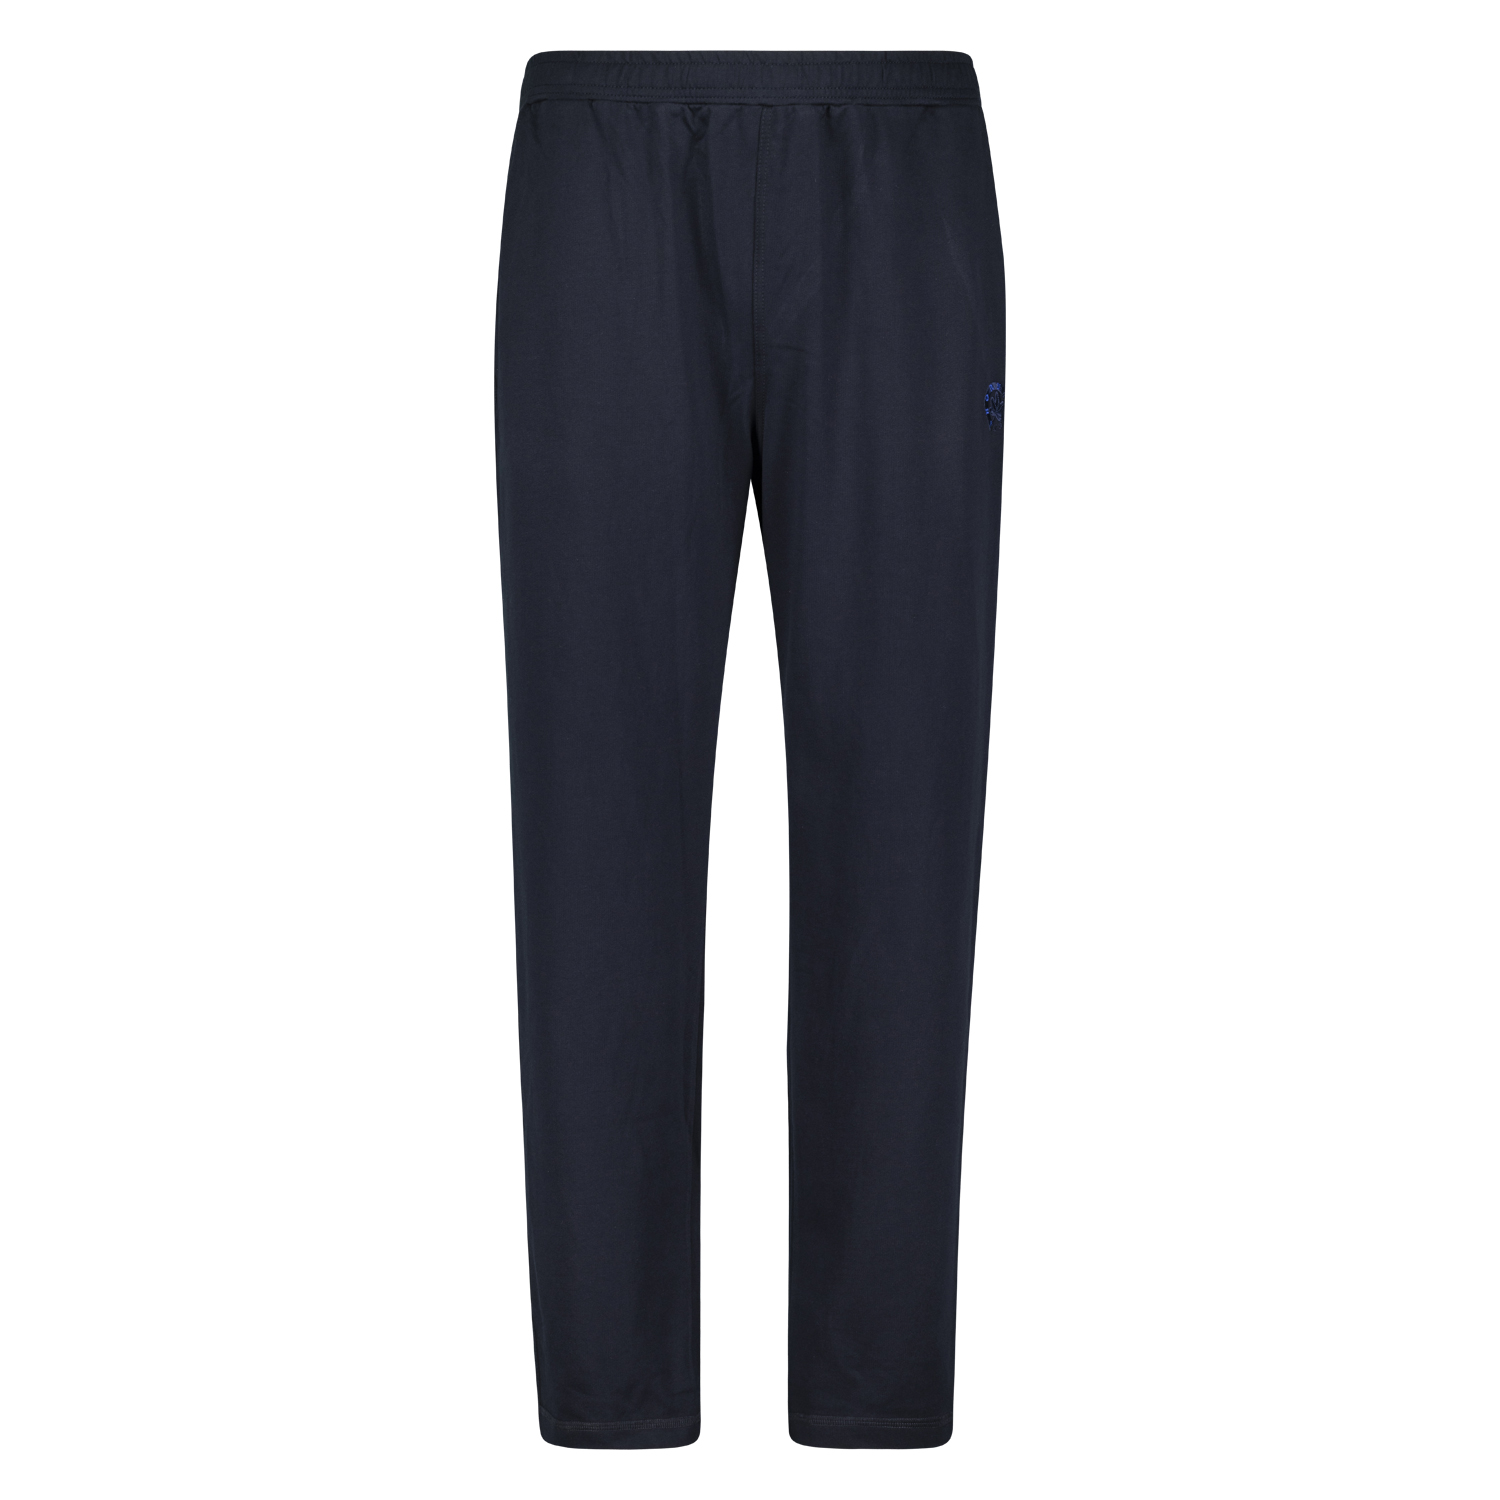 Pantalon en sweat bleu foncé by Ahorn Sportswear en grandes tailles jusqu'au 10XL